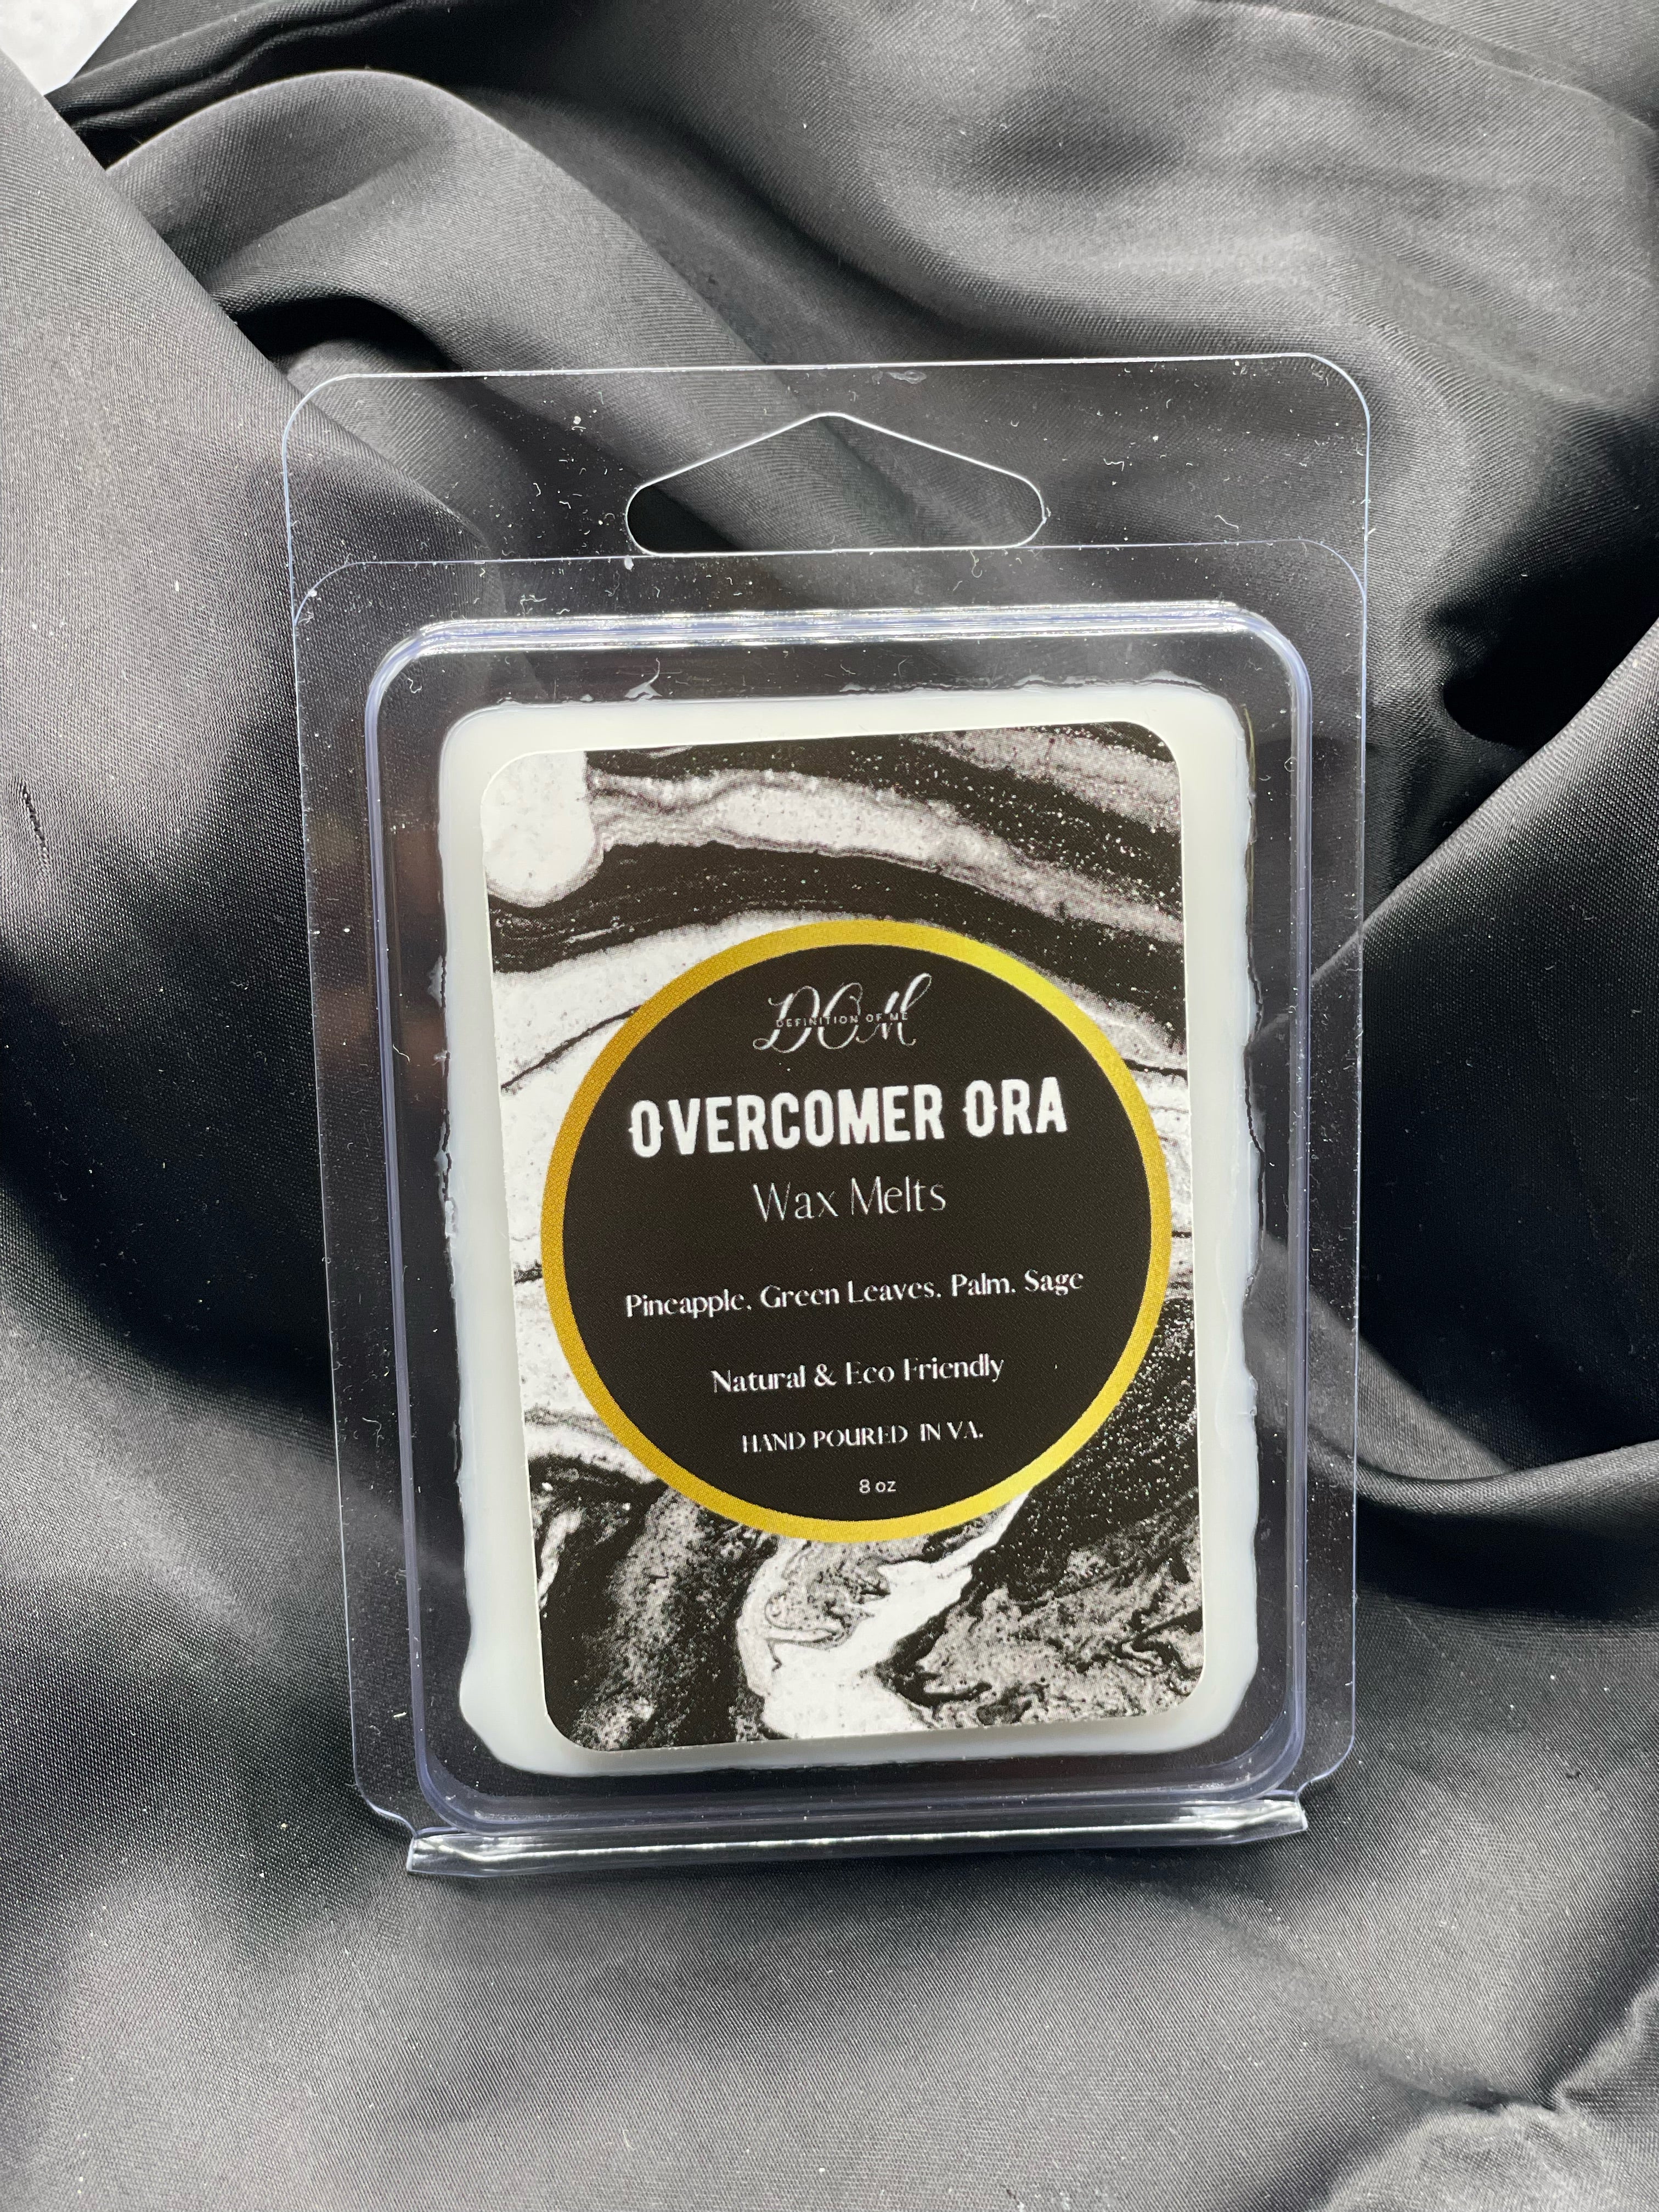 Wax melts: Overcomer Ora